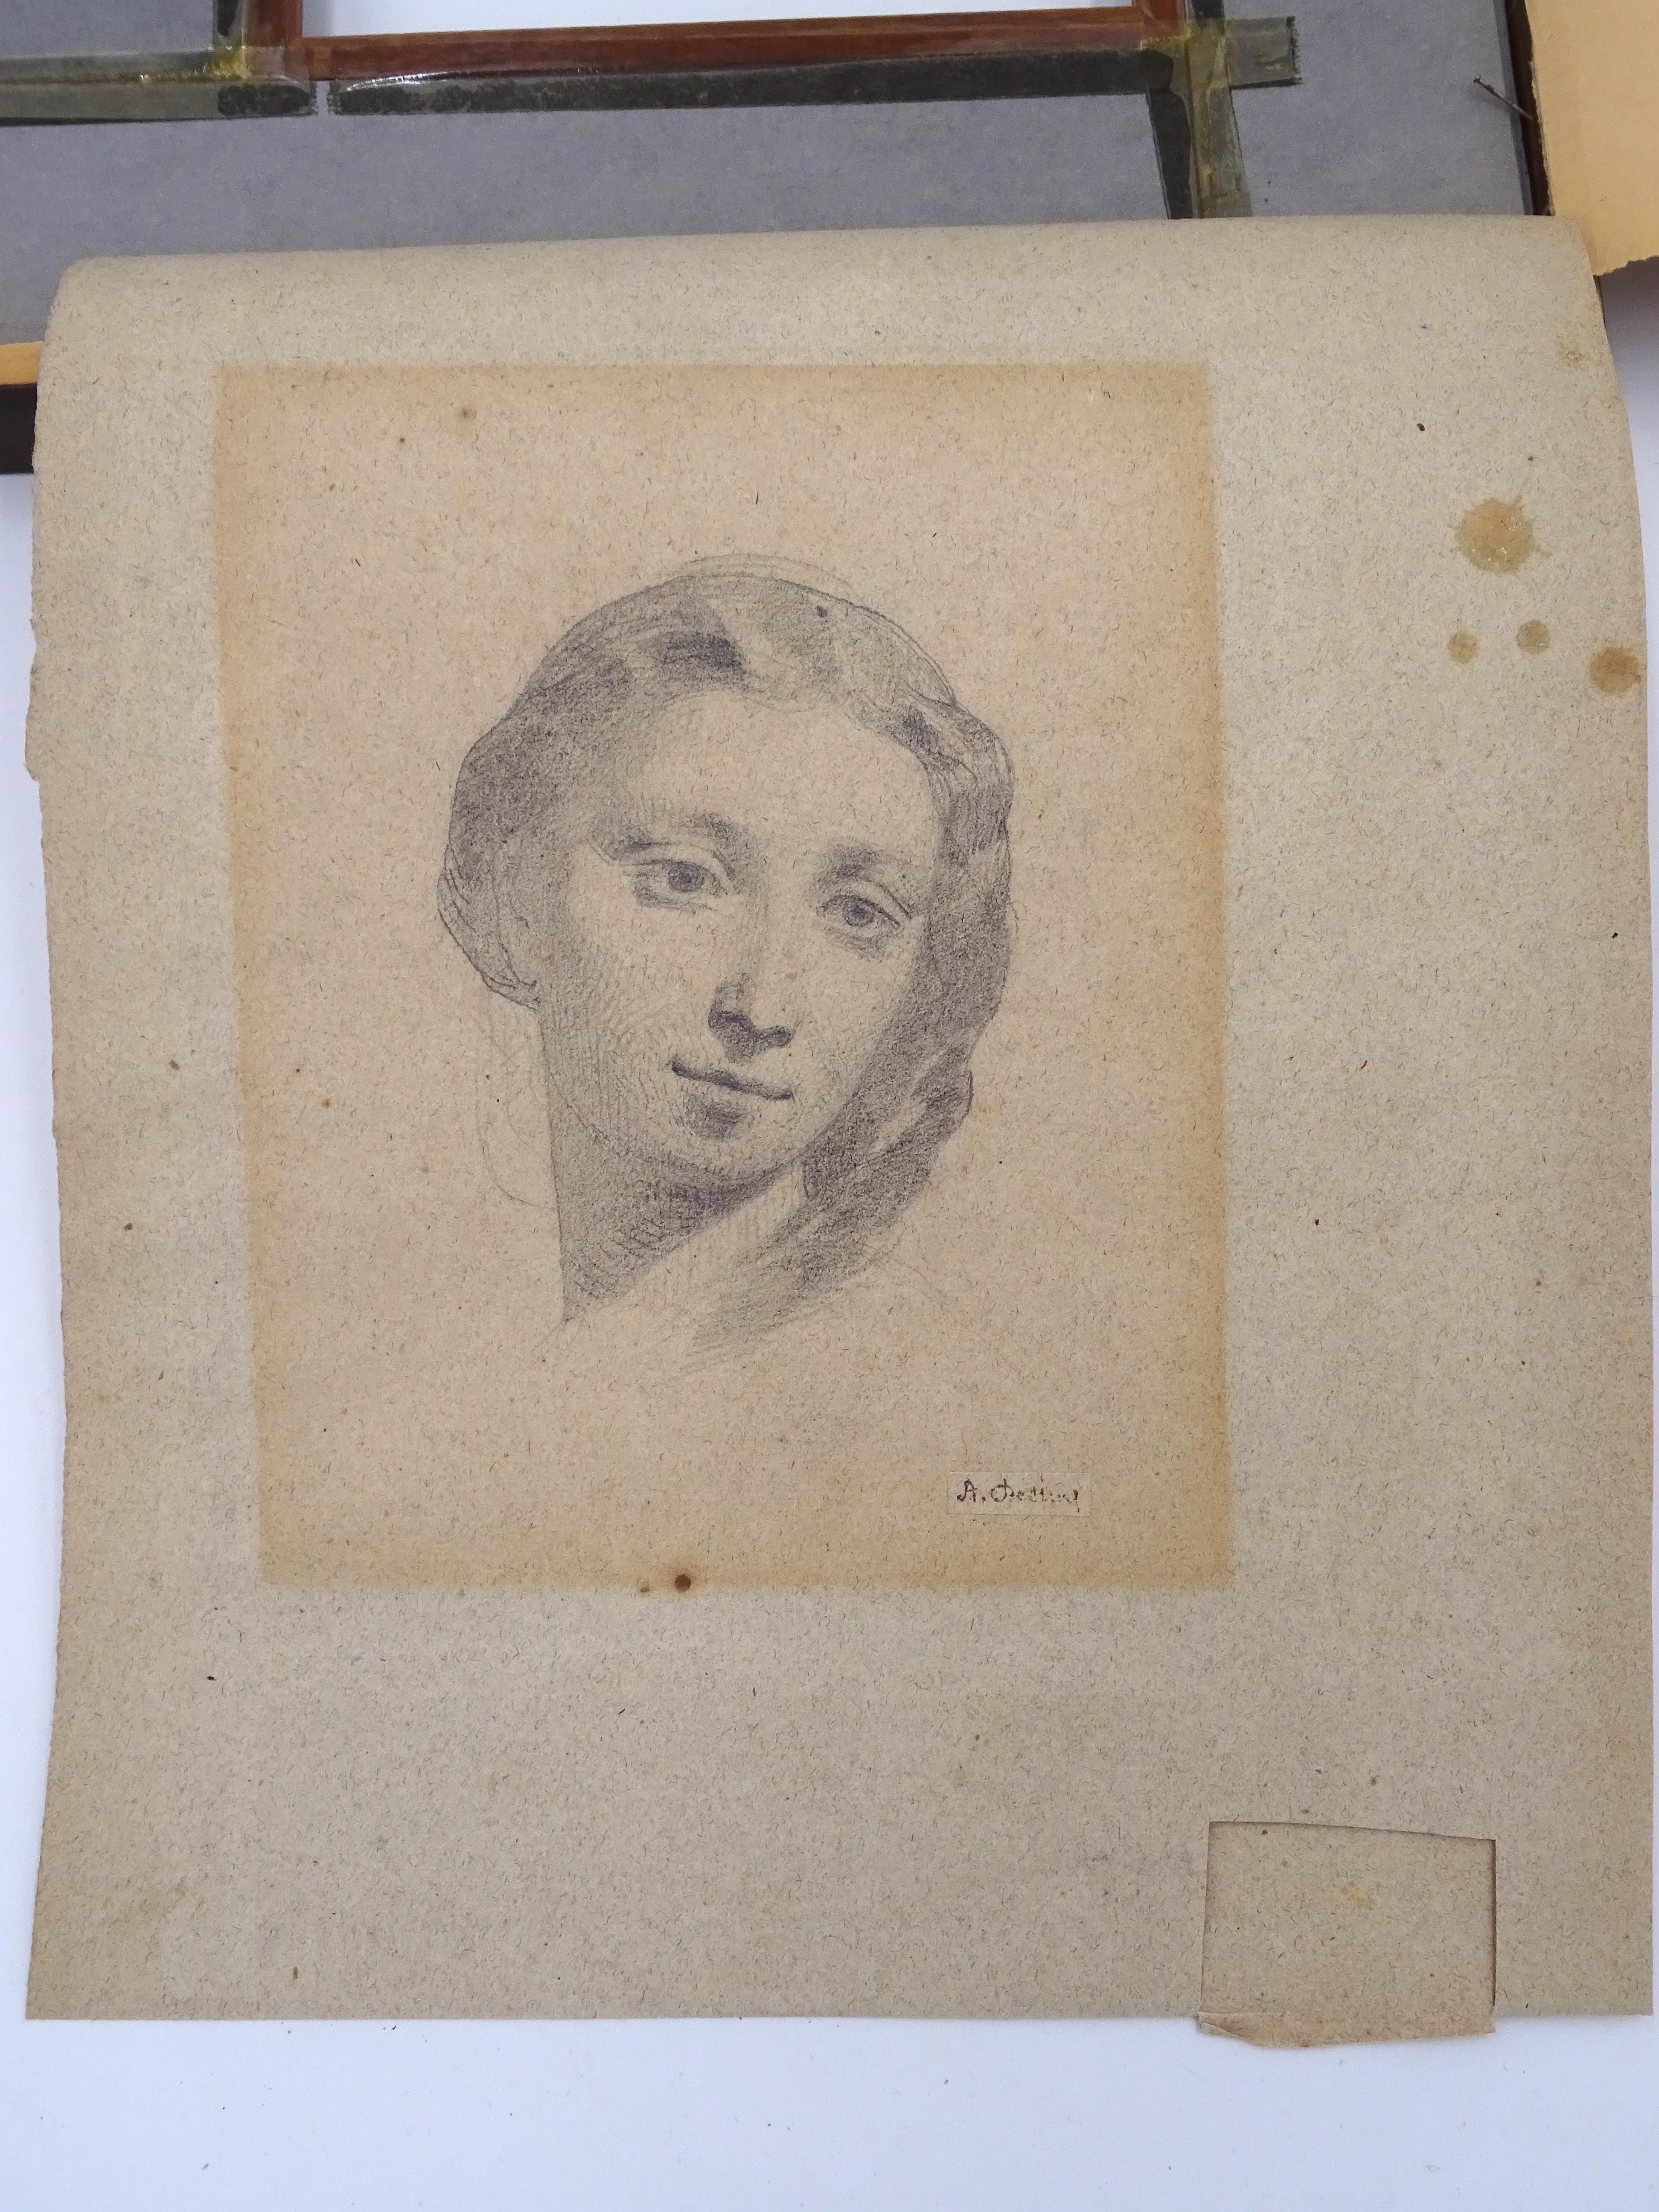 Dessin réalisé au crayon sur papier de 15 x 19 cm par l'artiste Alberto Pasini (Busseto 1826 - Cavoretto 1899) représentant un visage féminin datant d'environ 1870.

L'œuvre porte la signature de A. Pasini dans le coin inférieur droit, au-dessus